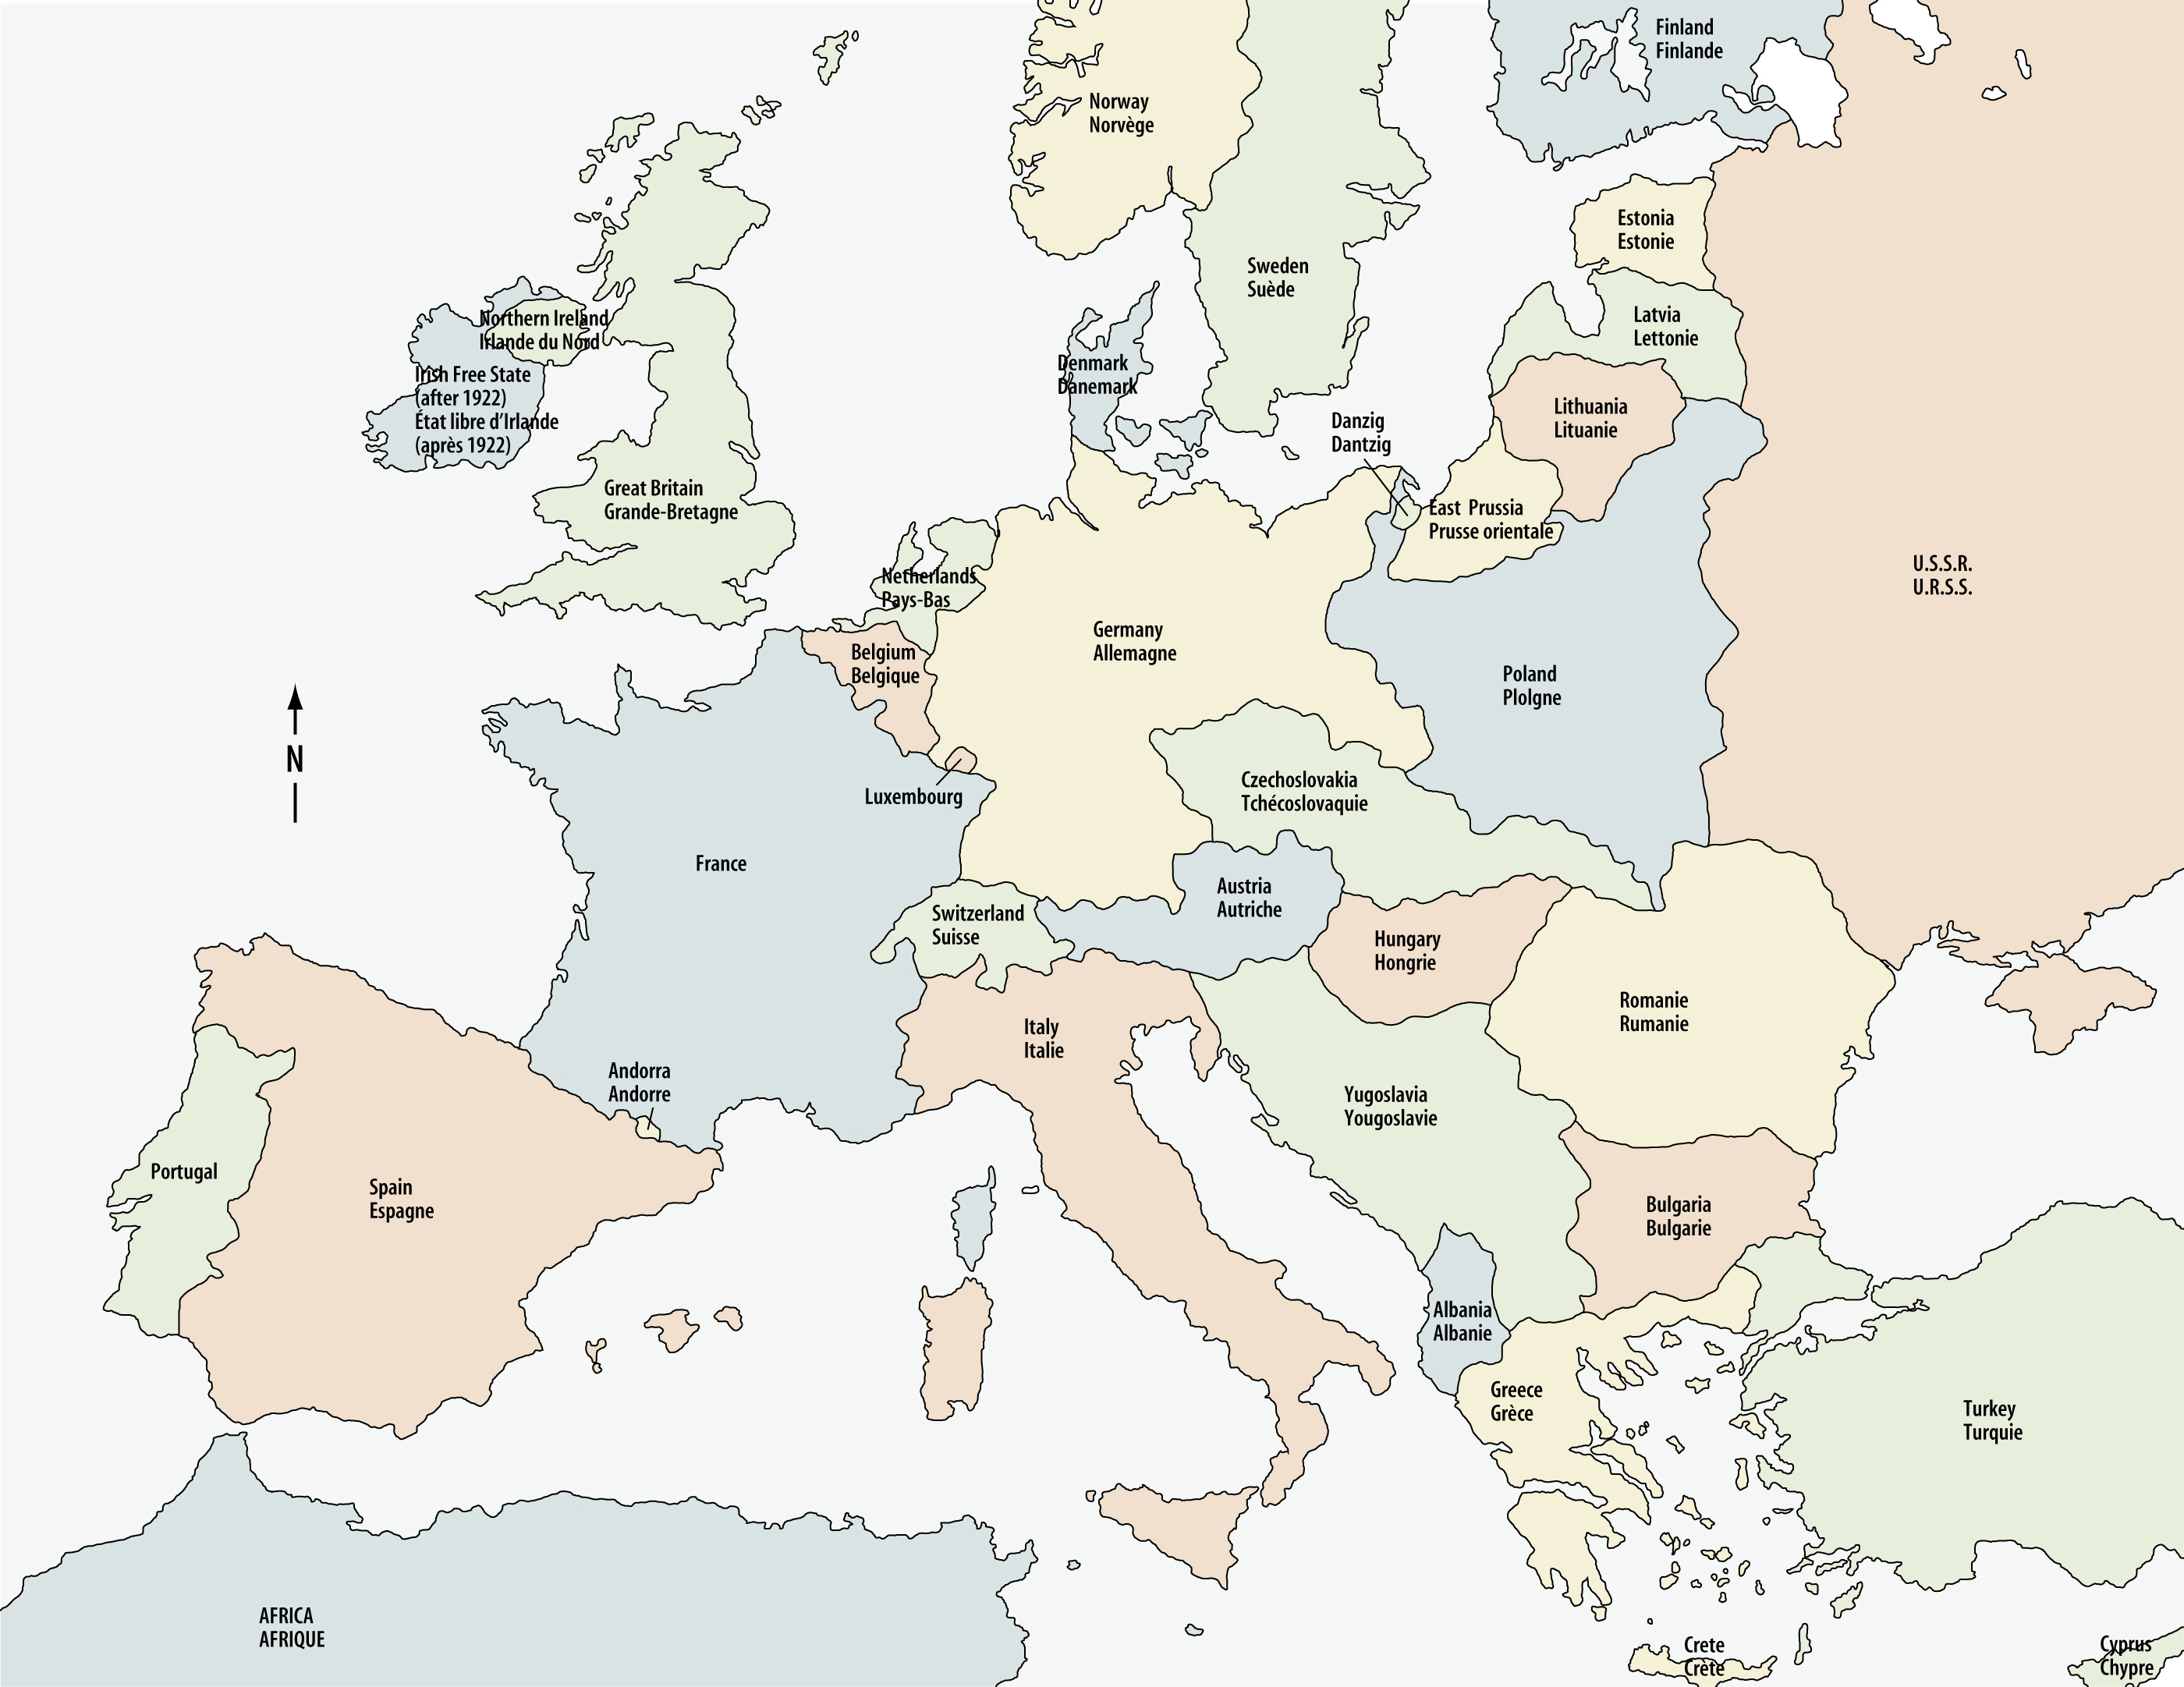 Europe, after the First World War